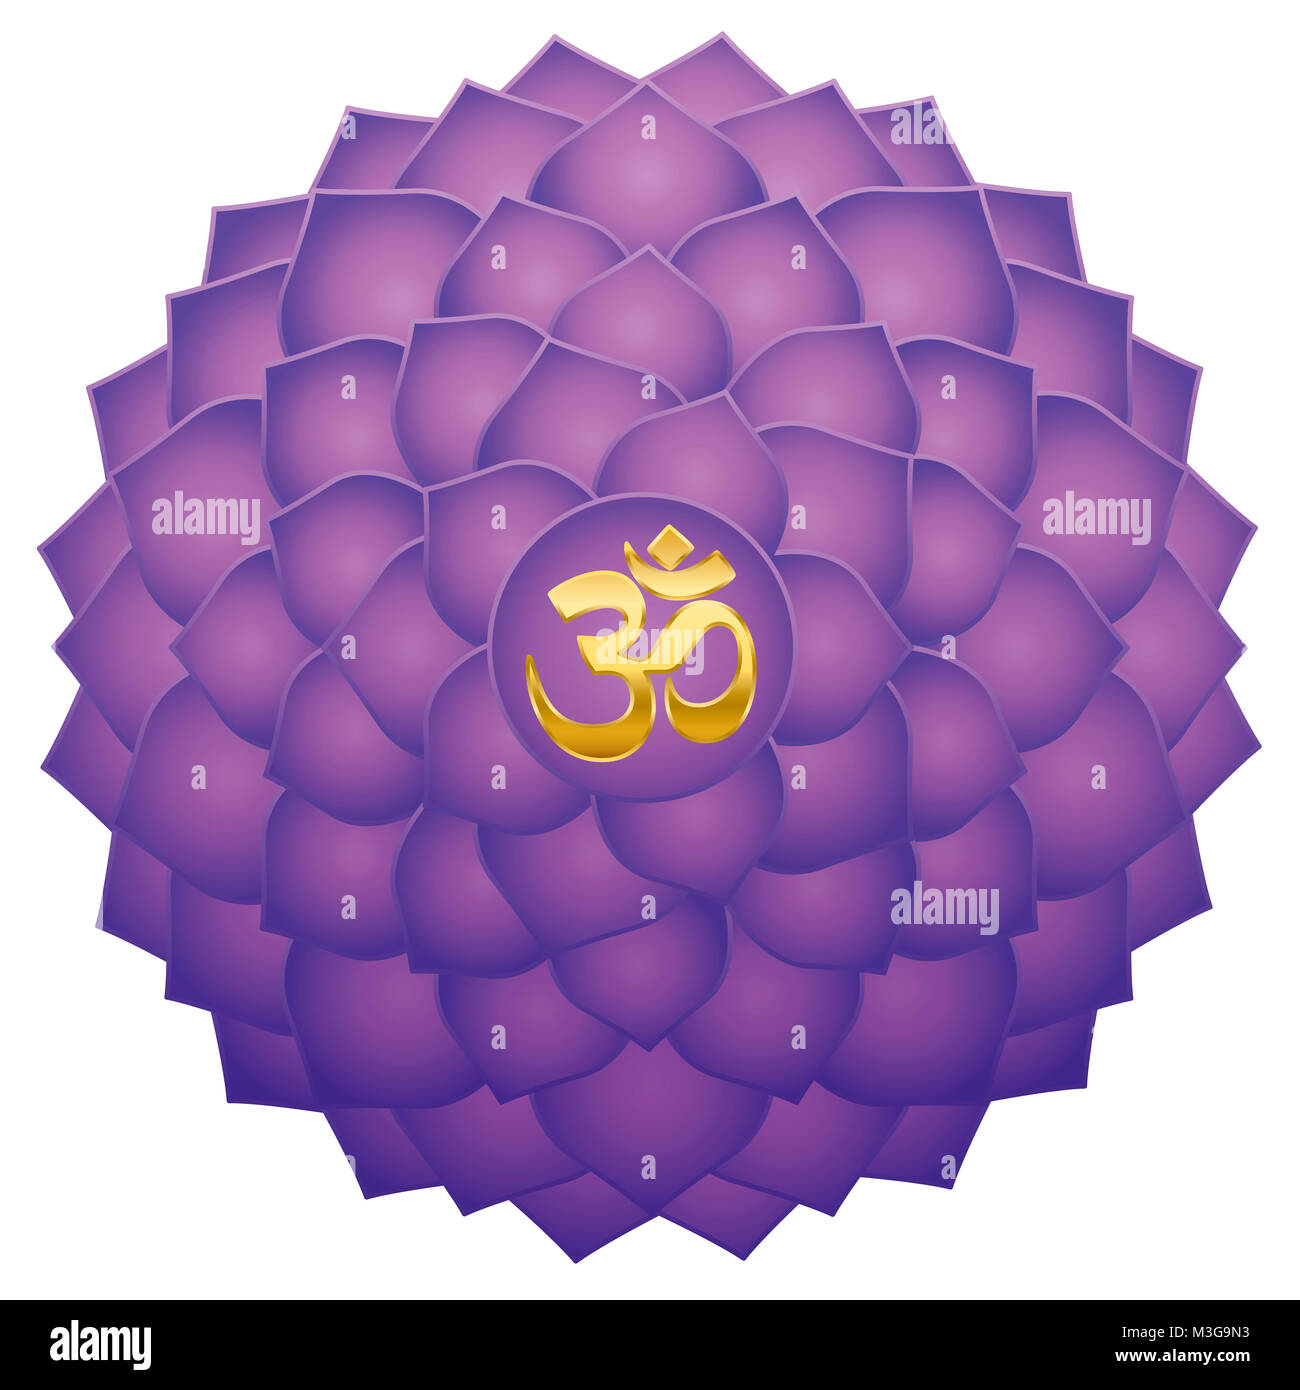 Chakra couronne avec Aum ou om symbole dans le centre. Mille pétales pourpre Sahasraha ou lotus. Symbole de guérison spirituelle. Banque D'Images